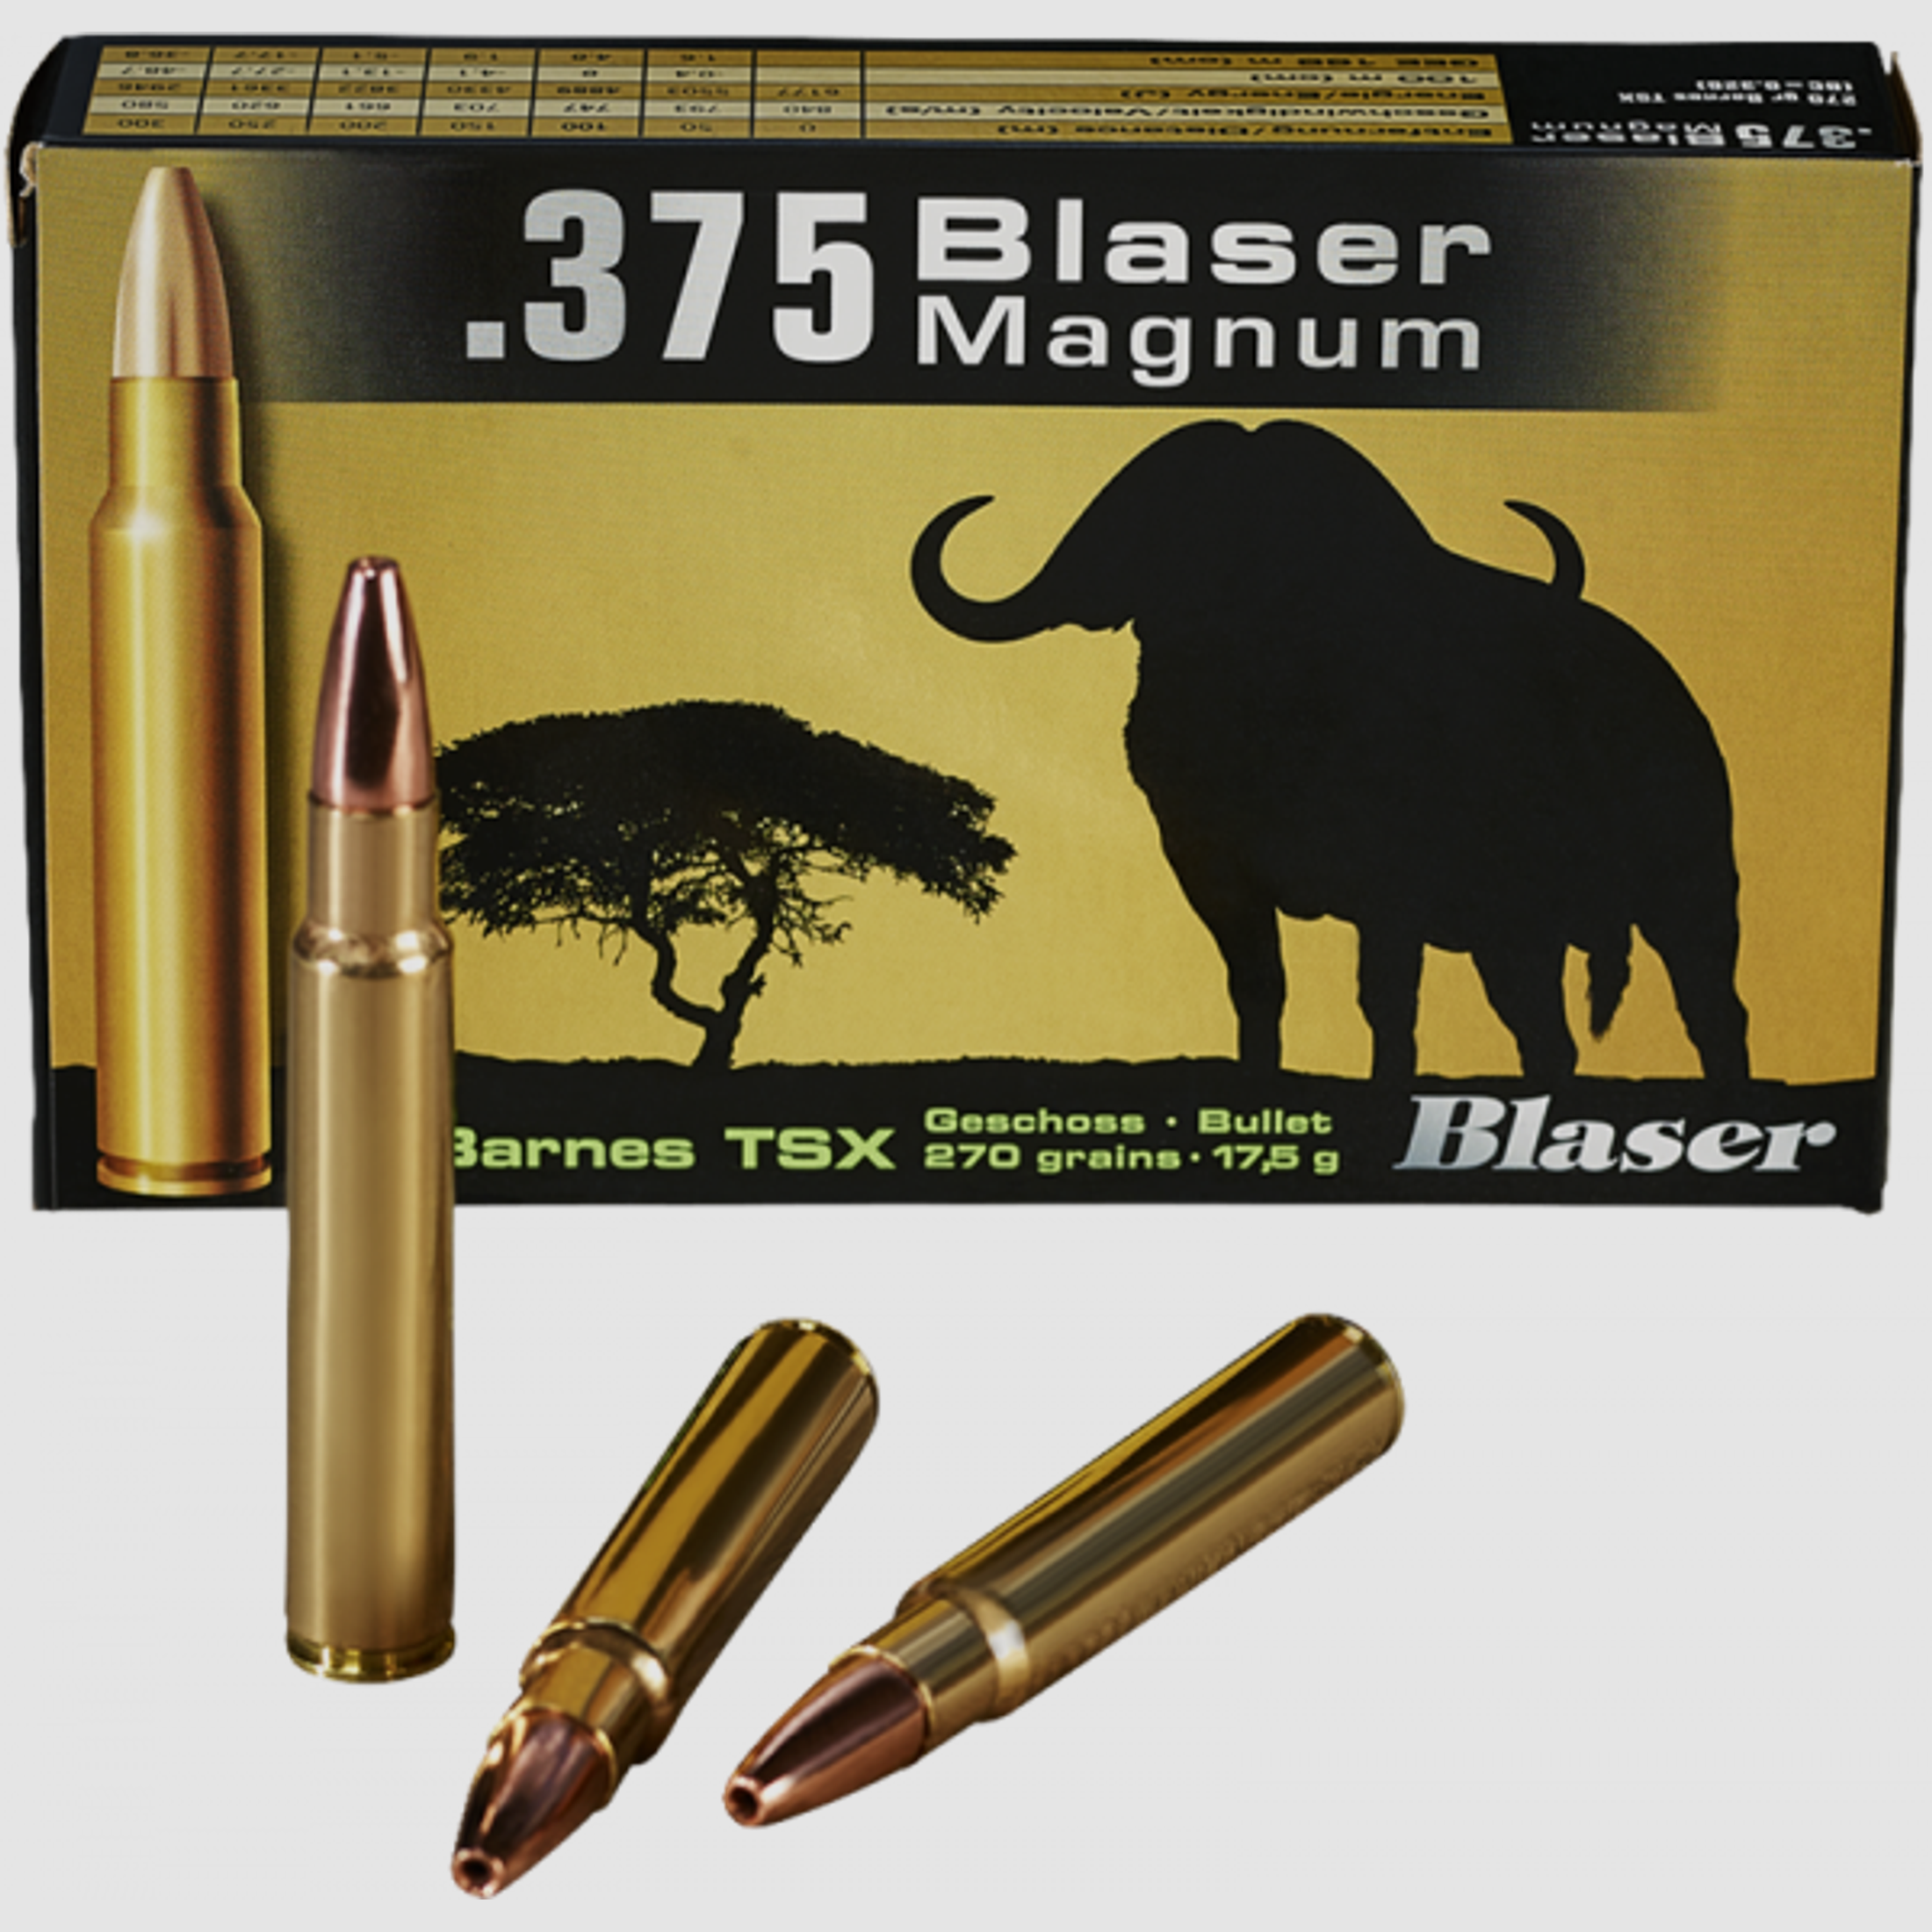 Blaser Magnum .375 Blaser Mag Barnes TSX 270 grs Büchsenpatronen